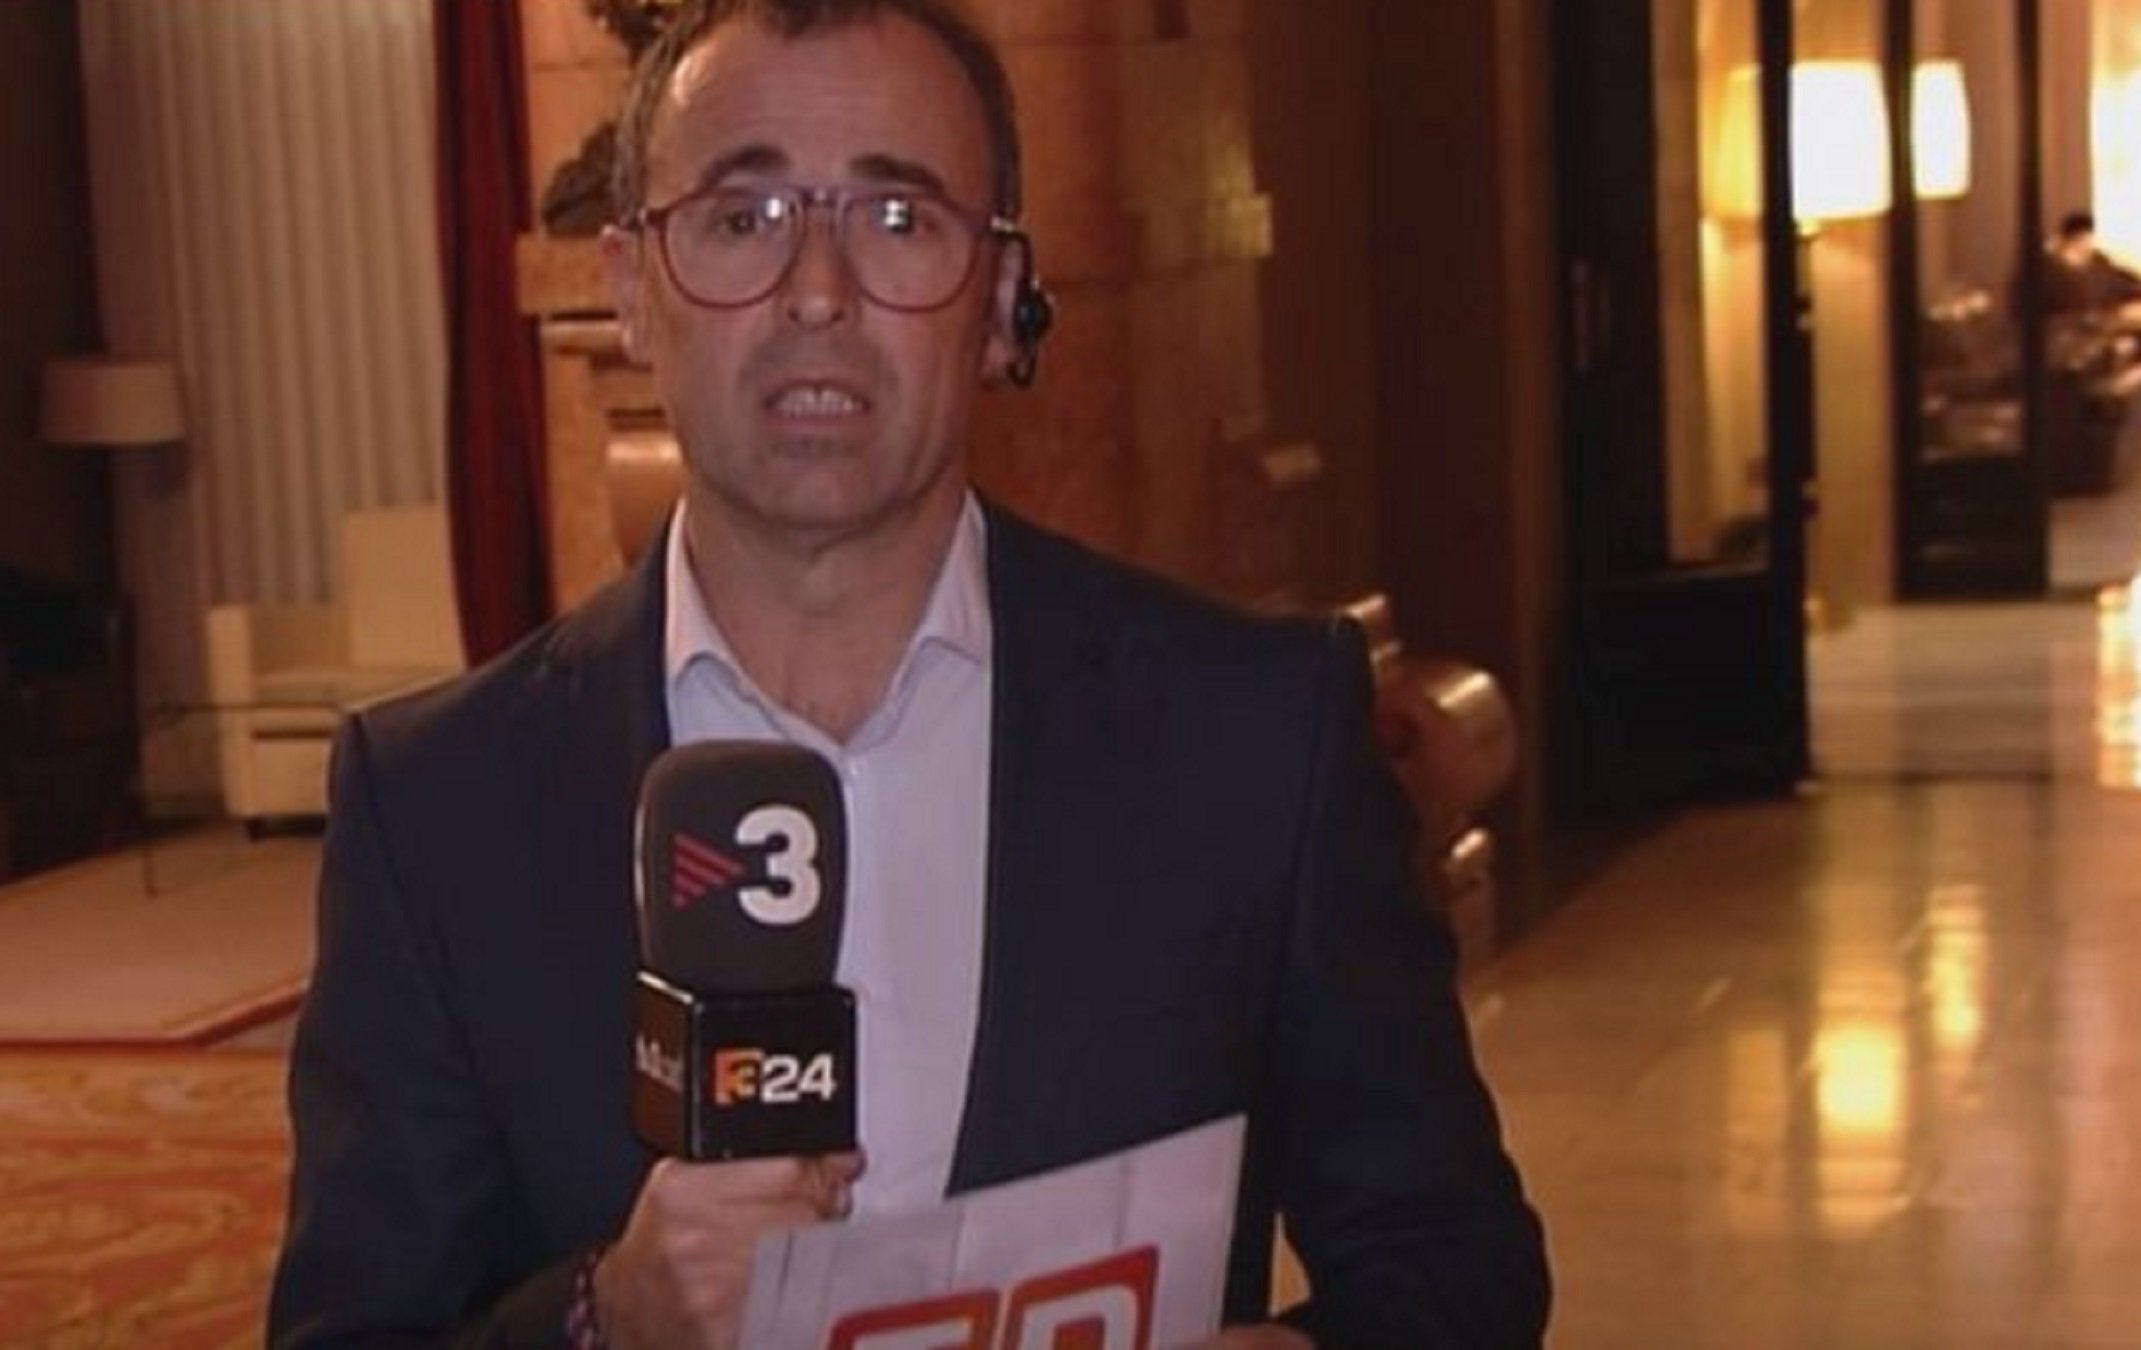 El cumpleaños más doloroso de Jordi Eroles (TV3): de urgencias por una rotura